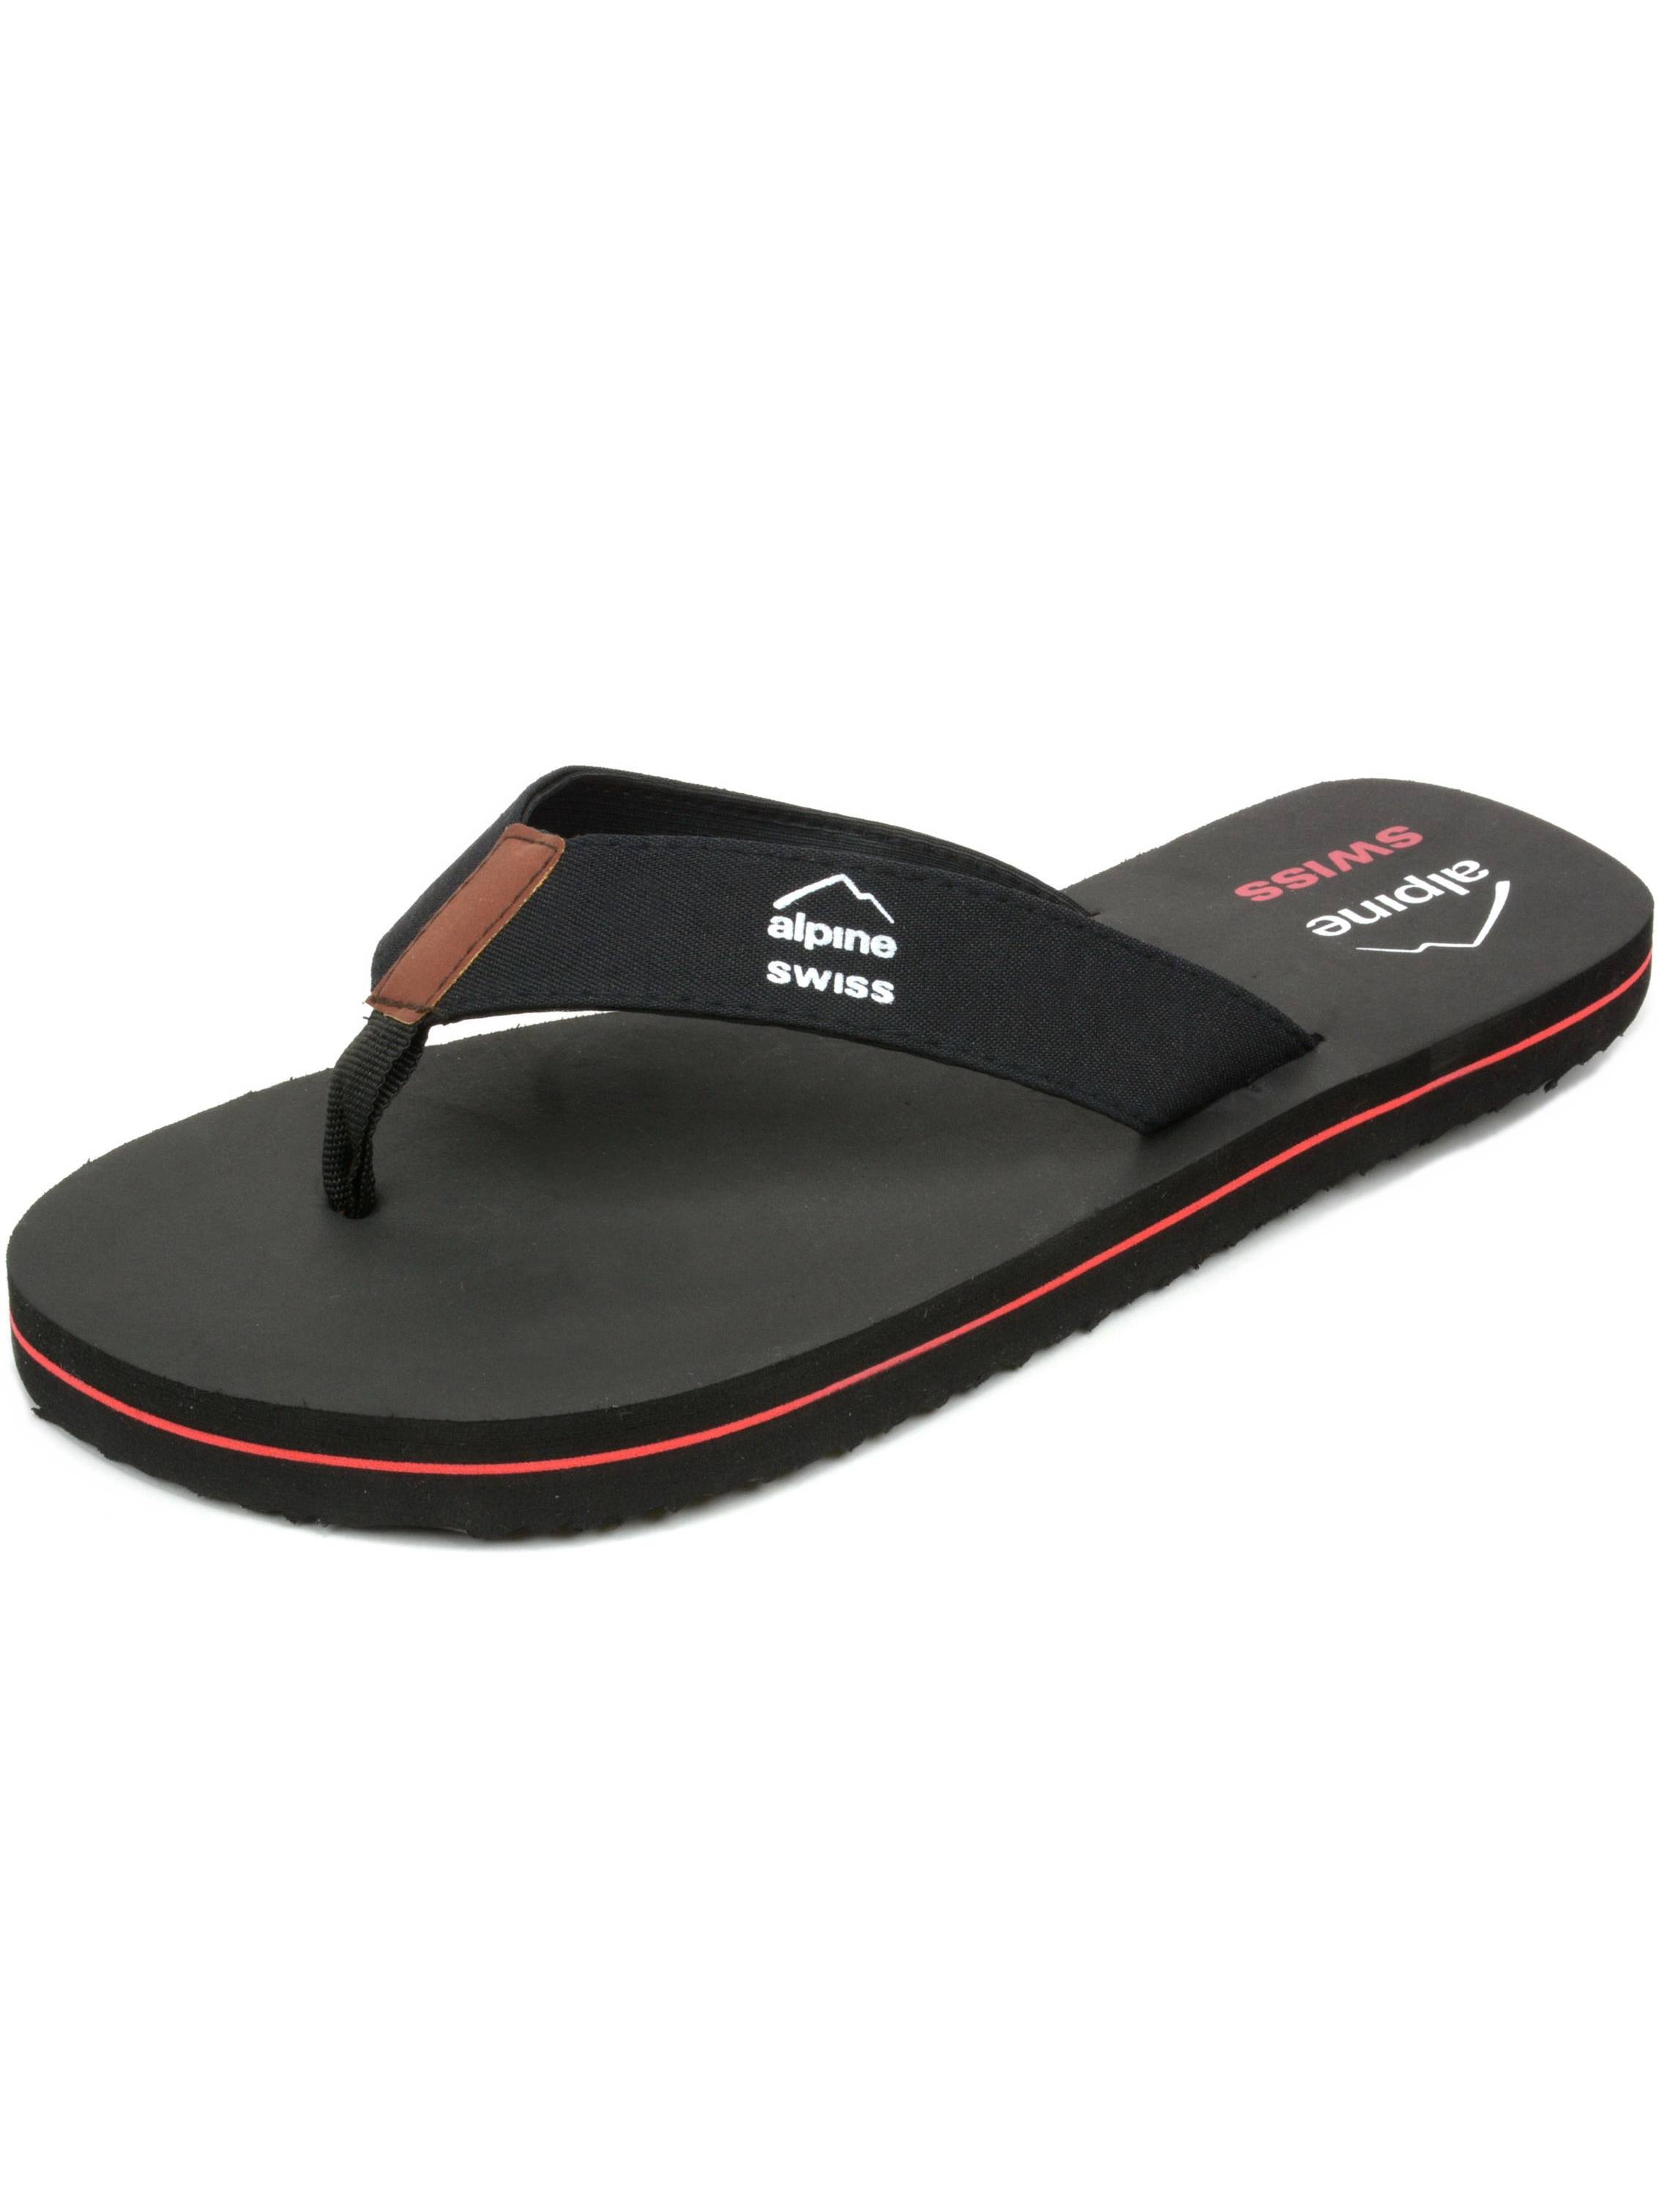 alpine swiss men's flip flops beach sandals lightweight eva sole comfort thongs - image 1 of 6